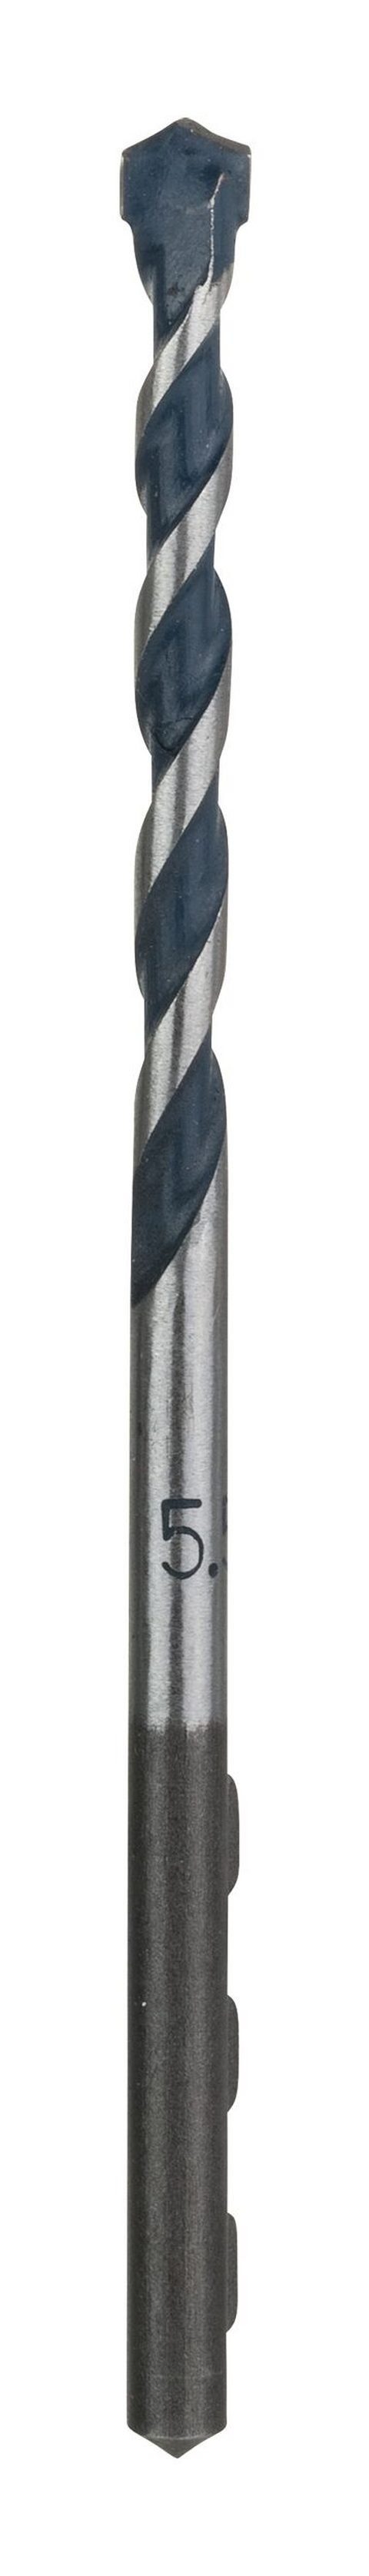 BOSCH Steinbohrer, CYL-5 (Blue Granite) Betonbohrer - 5,5 x 50 x 100 mm - 1er-Pack